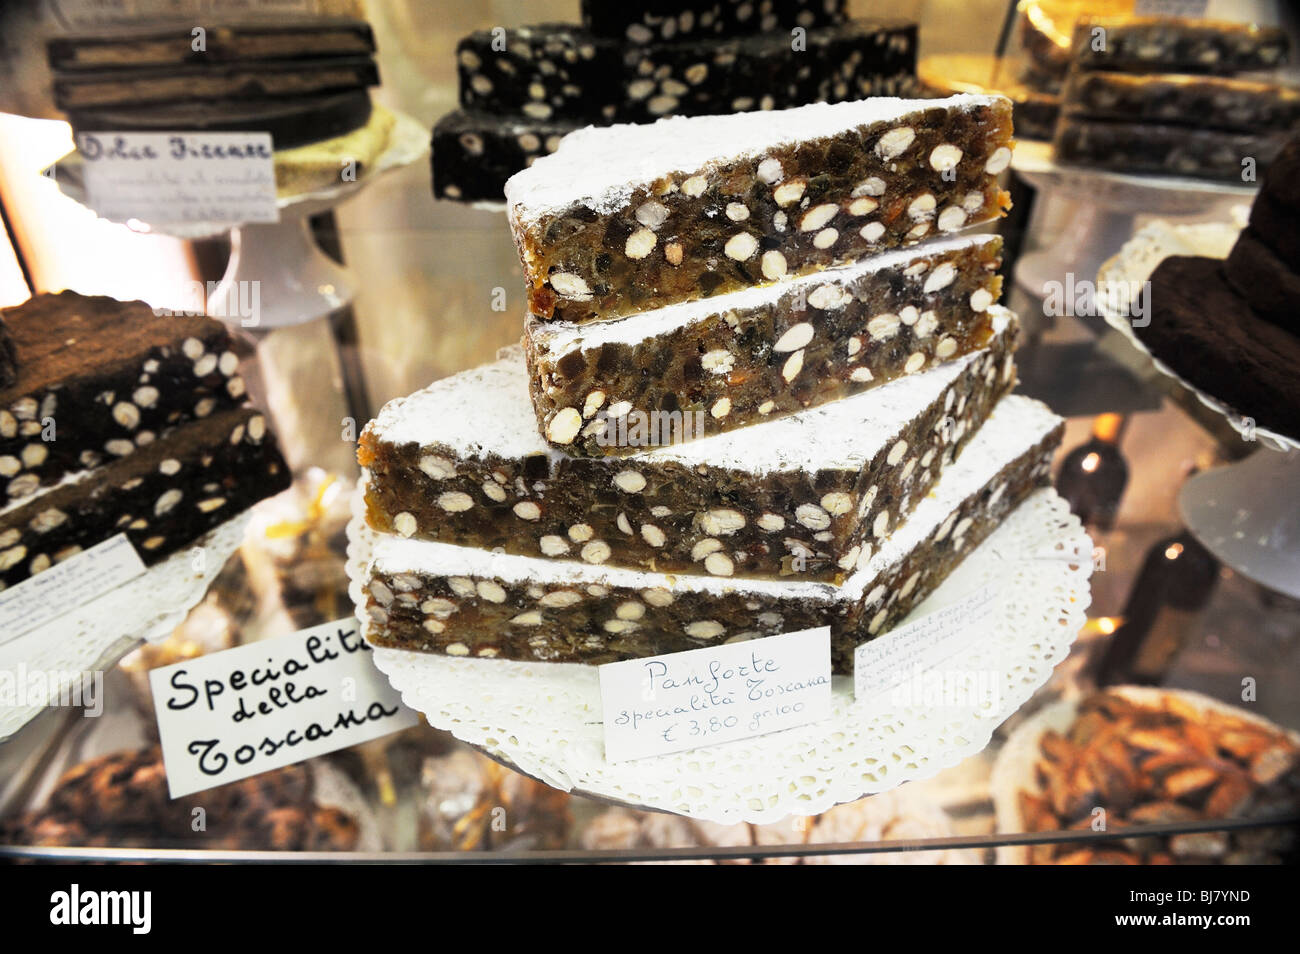 Panforte. Traditionelle italienische Obst- und Nuss Dessert Kuchen essen Spezialität. Feinkost Lebensmittel Shop Fenster Anzeige, Toskana, Italien Stockfoto